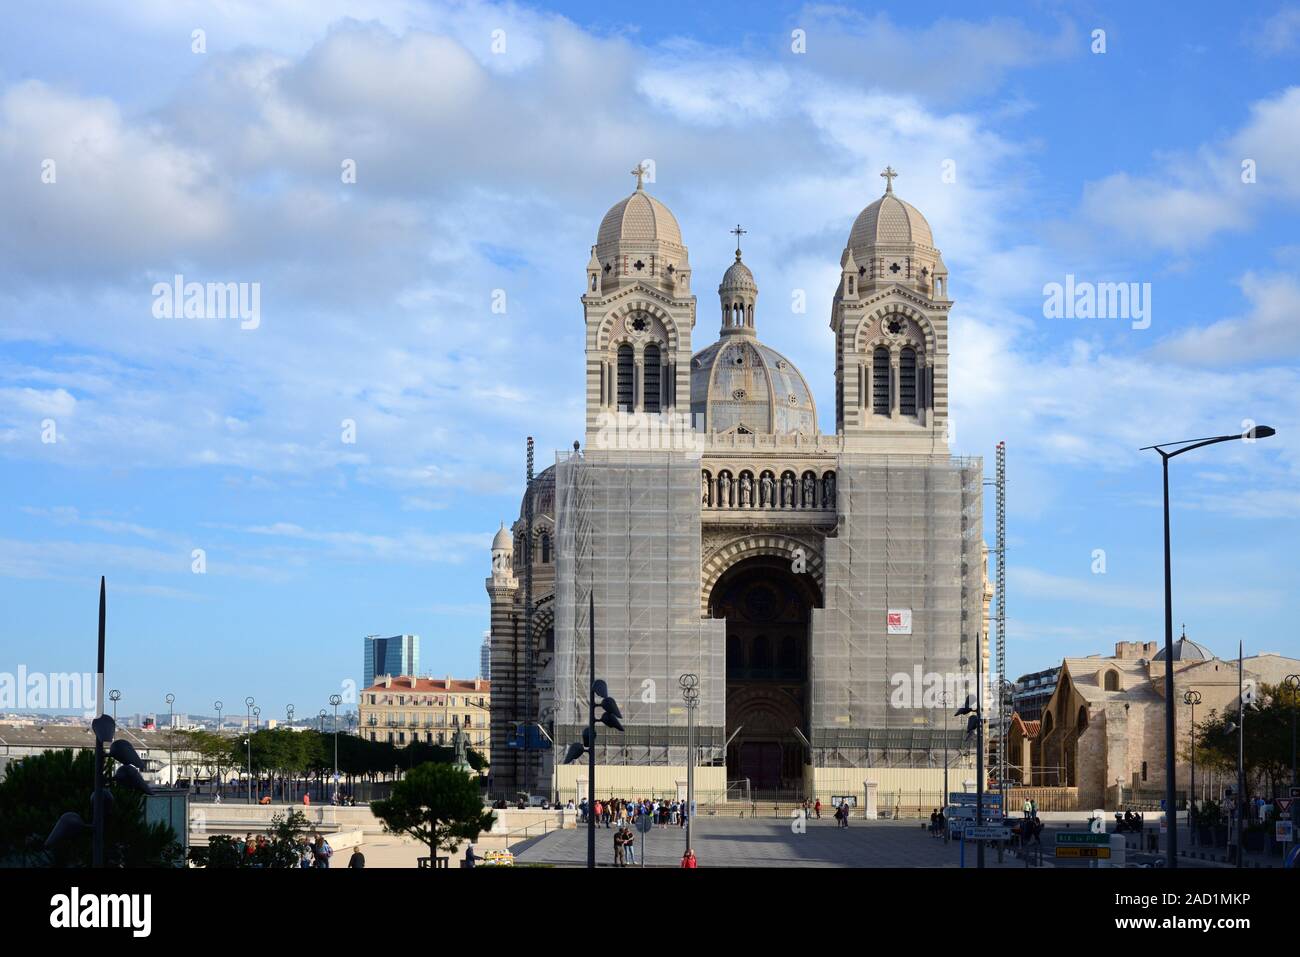 Un échafaudage recouvrant la façade principale à l'Est de Marseille Cathedra lors de la rénovation, Cathédrale de la Major (1852-96) Marseille Provence France Banque D'Images